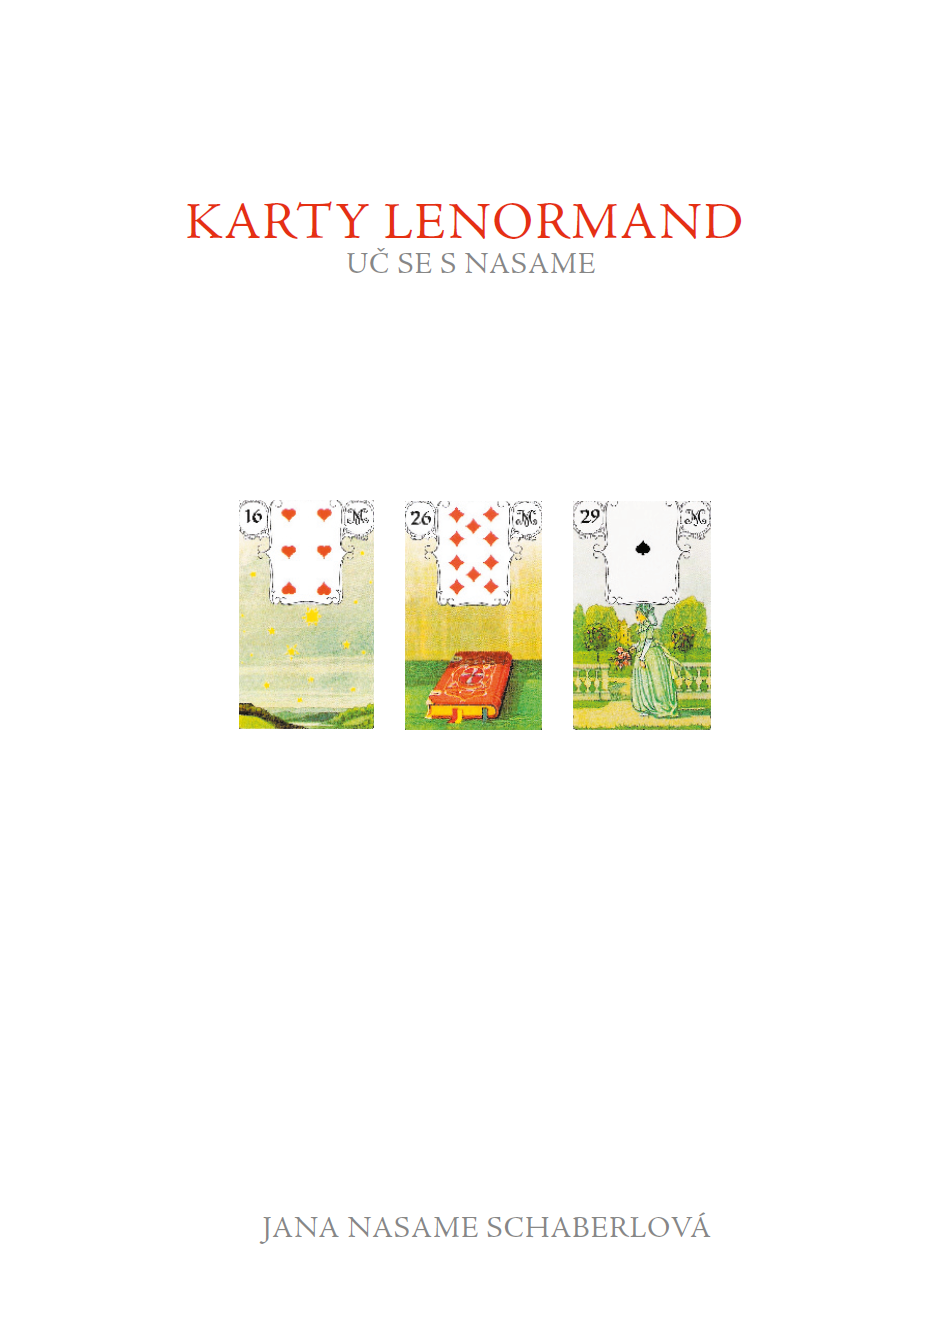 Karty Lenormand - Uč se s Nasame